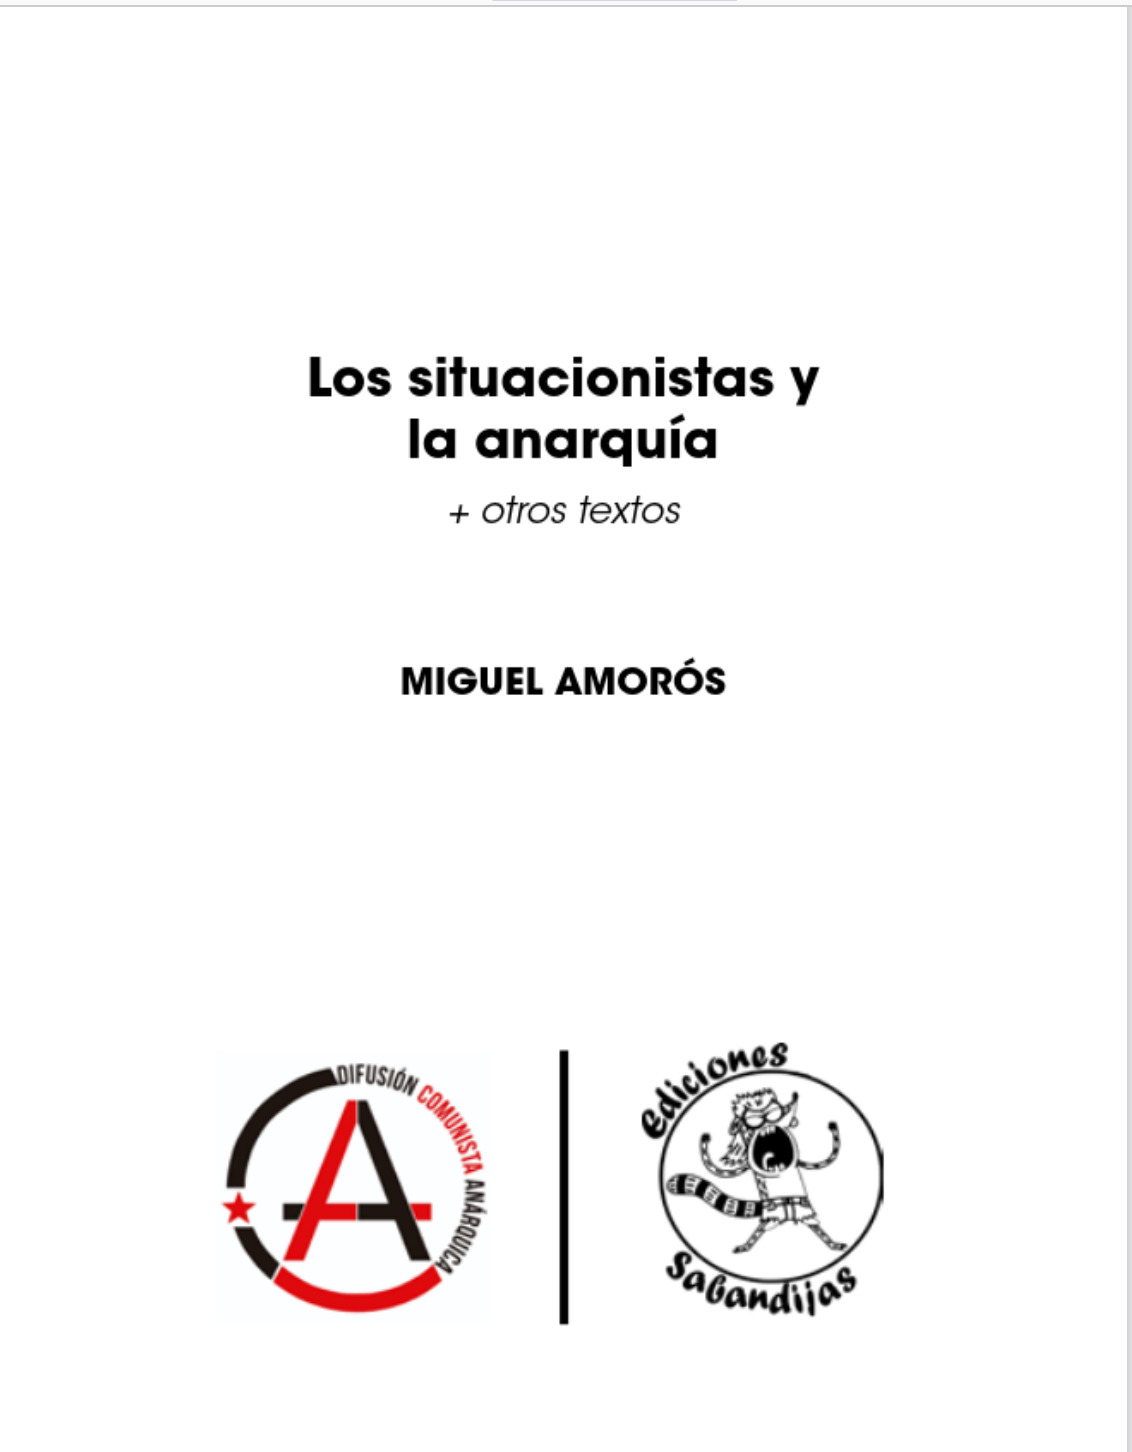 Los situacionistias y la anarquía + otros textos